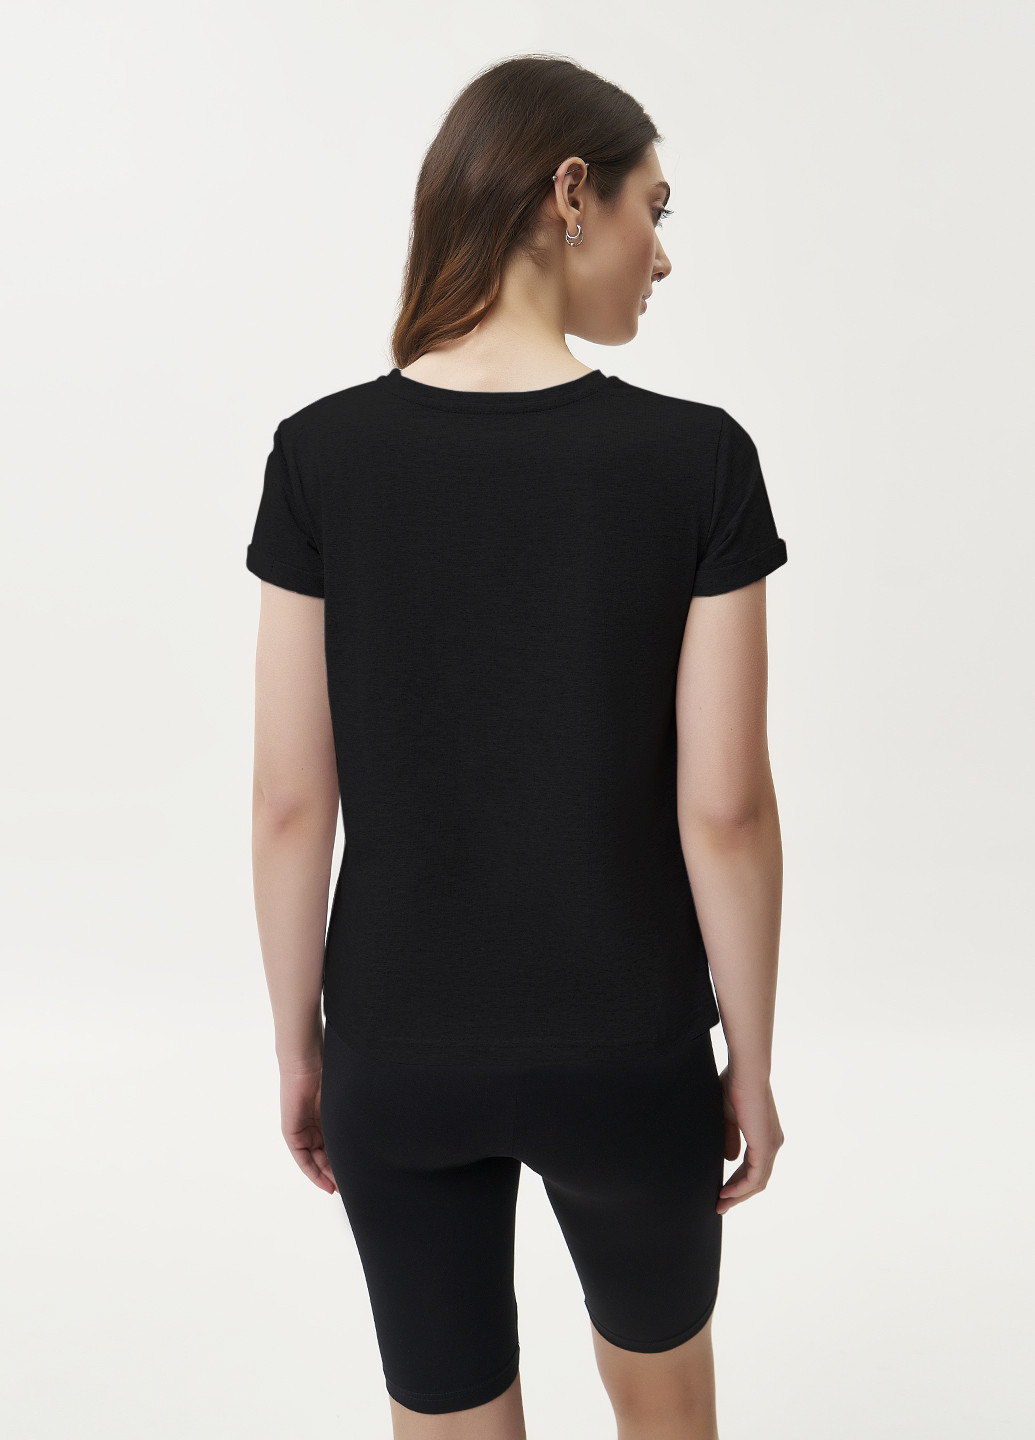 Черная летняя футболка женская базовая, рукав с подворотом KASTA design